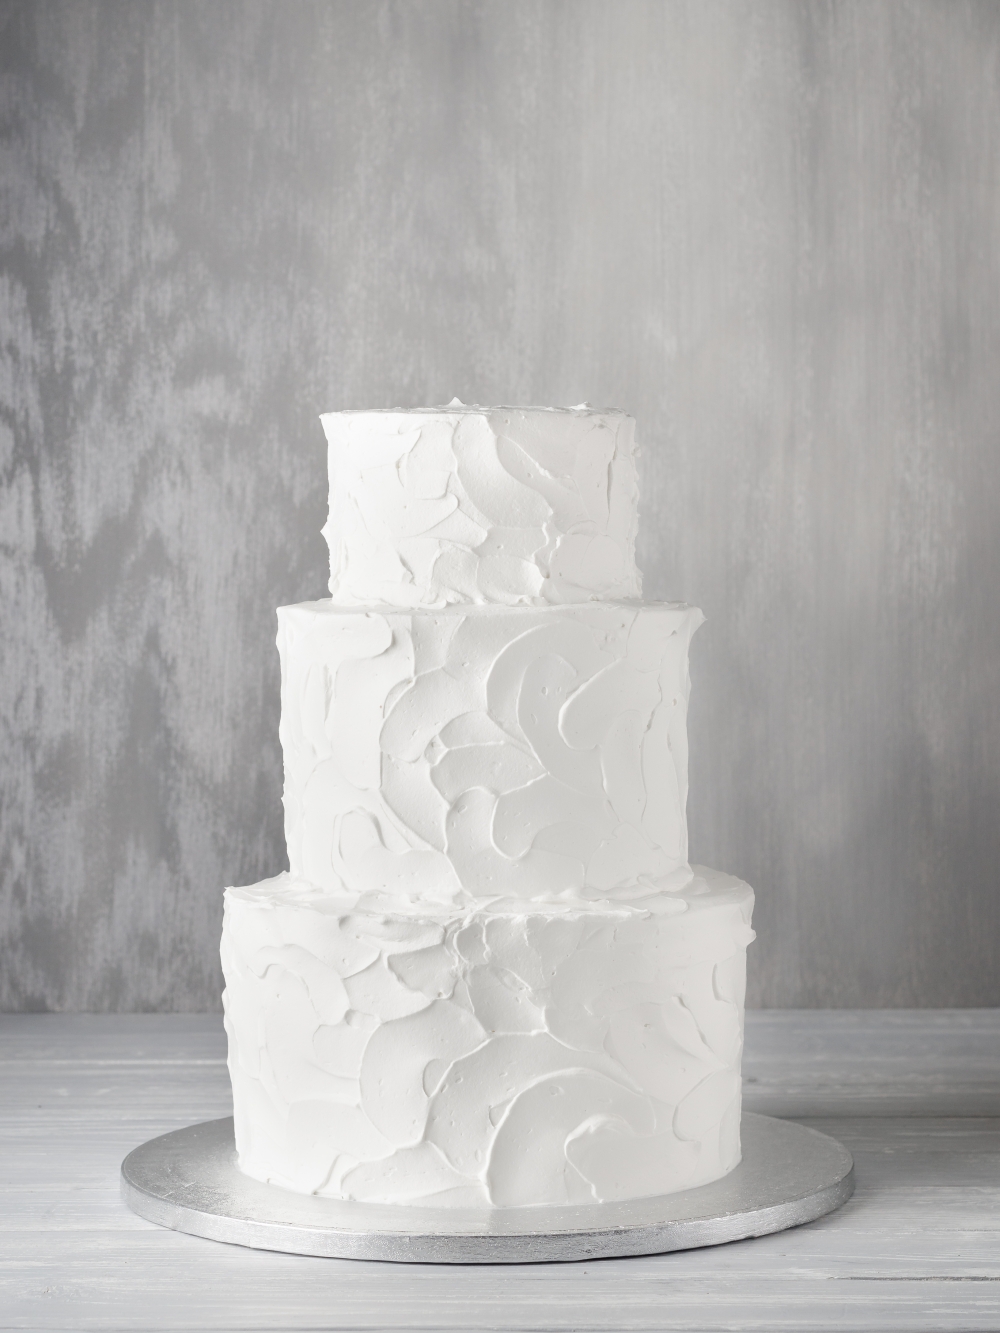 Свадебный торт без мастики. Отличный вариант, если вы решили самостоятельно украсить торт цветами или другими элементами.